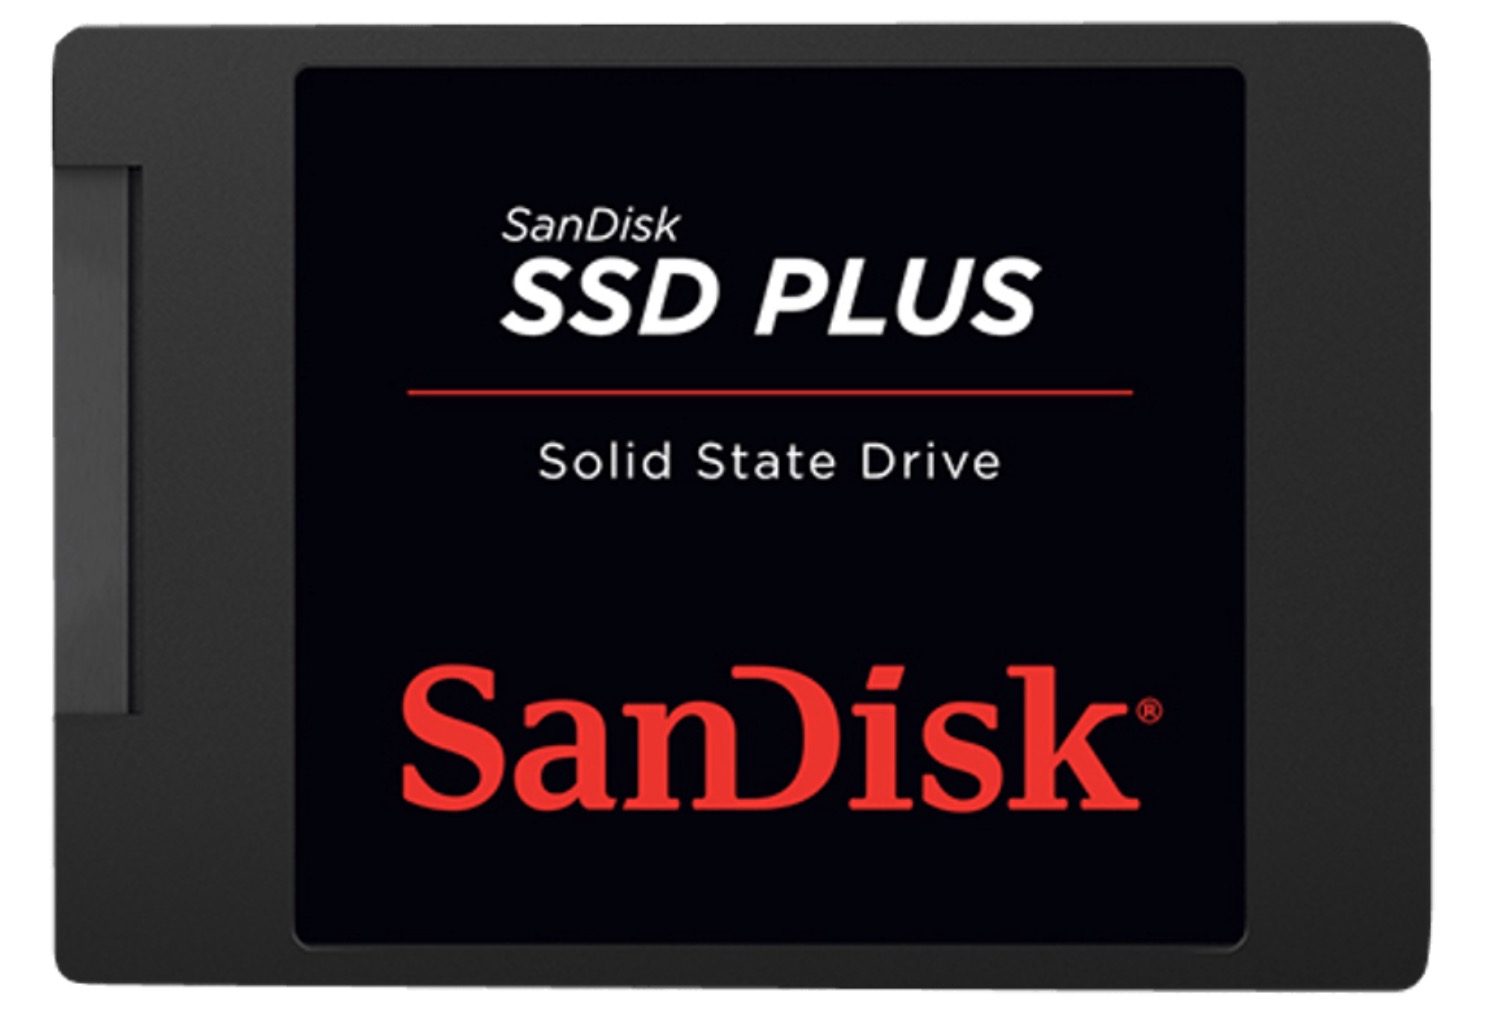 SanDisk SSD Plus 480GB Interne SSD für nur 52,- Euro